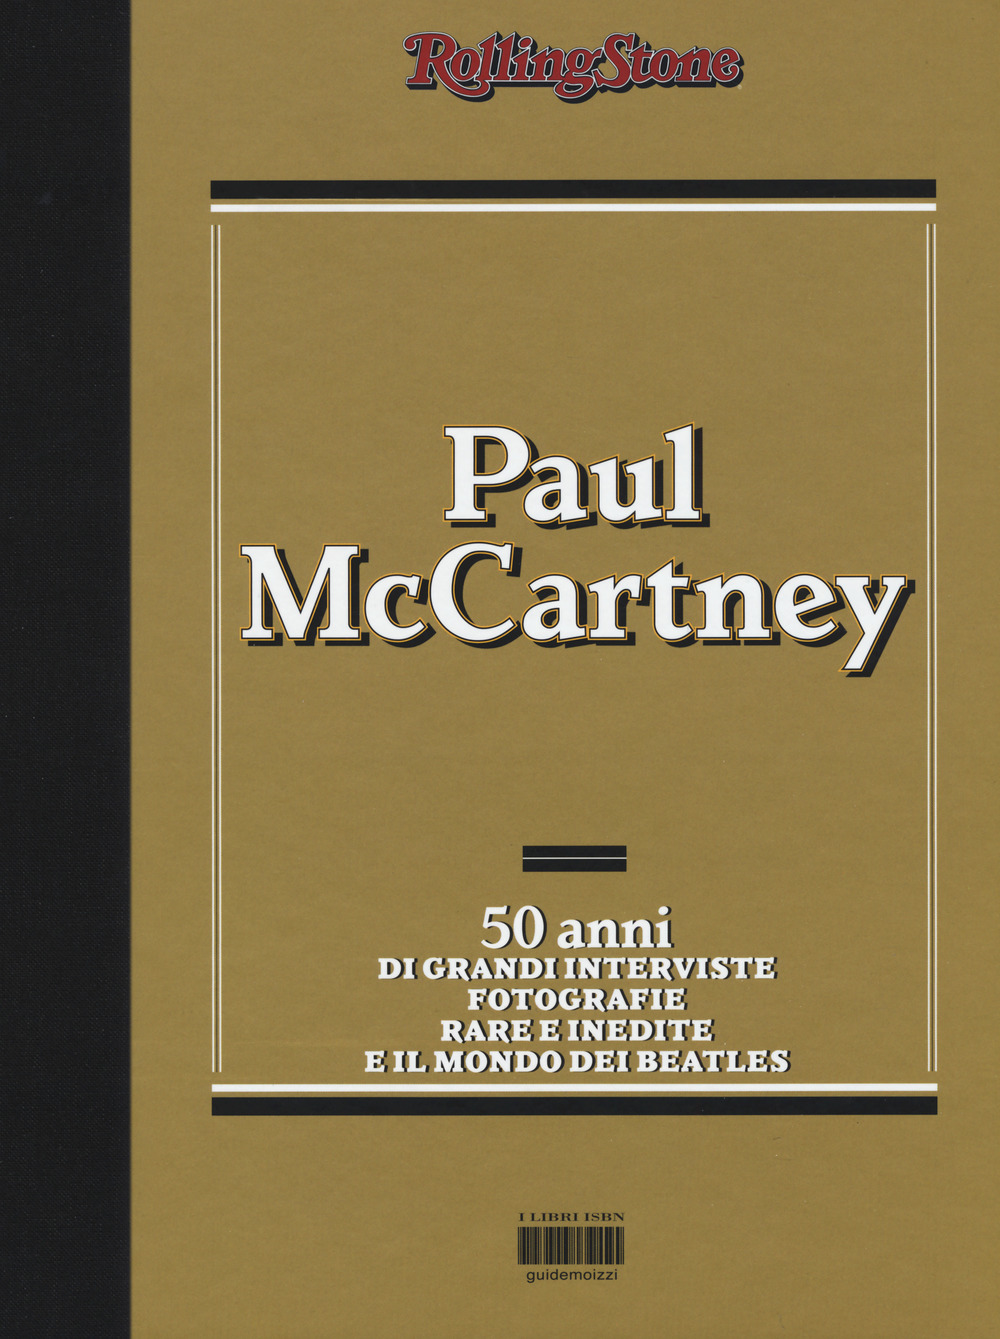 Paul McCartney. 50 anni di grandi interviste, fotografie rare e indiite e il mondo dei Beatles